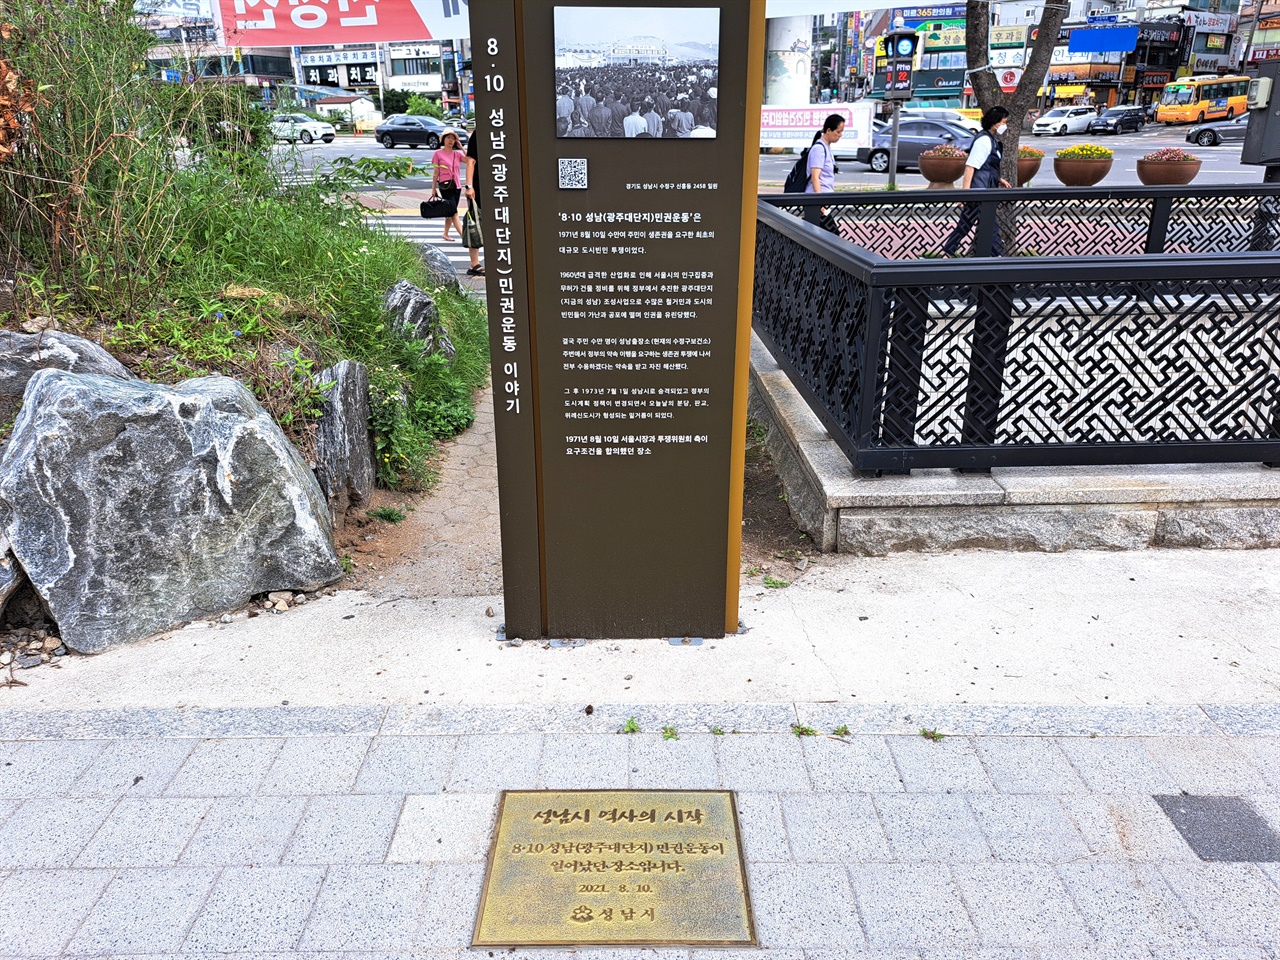 1971년 8월 10일 오후, 서울시장 양택식이 항쟁 대표부와 협상했다는 자리에 세워진 조형물.